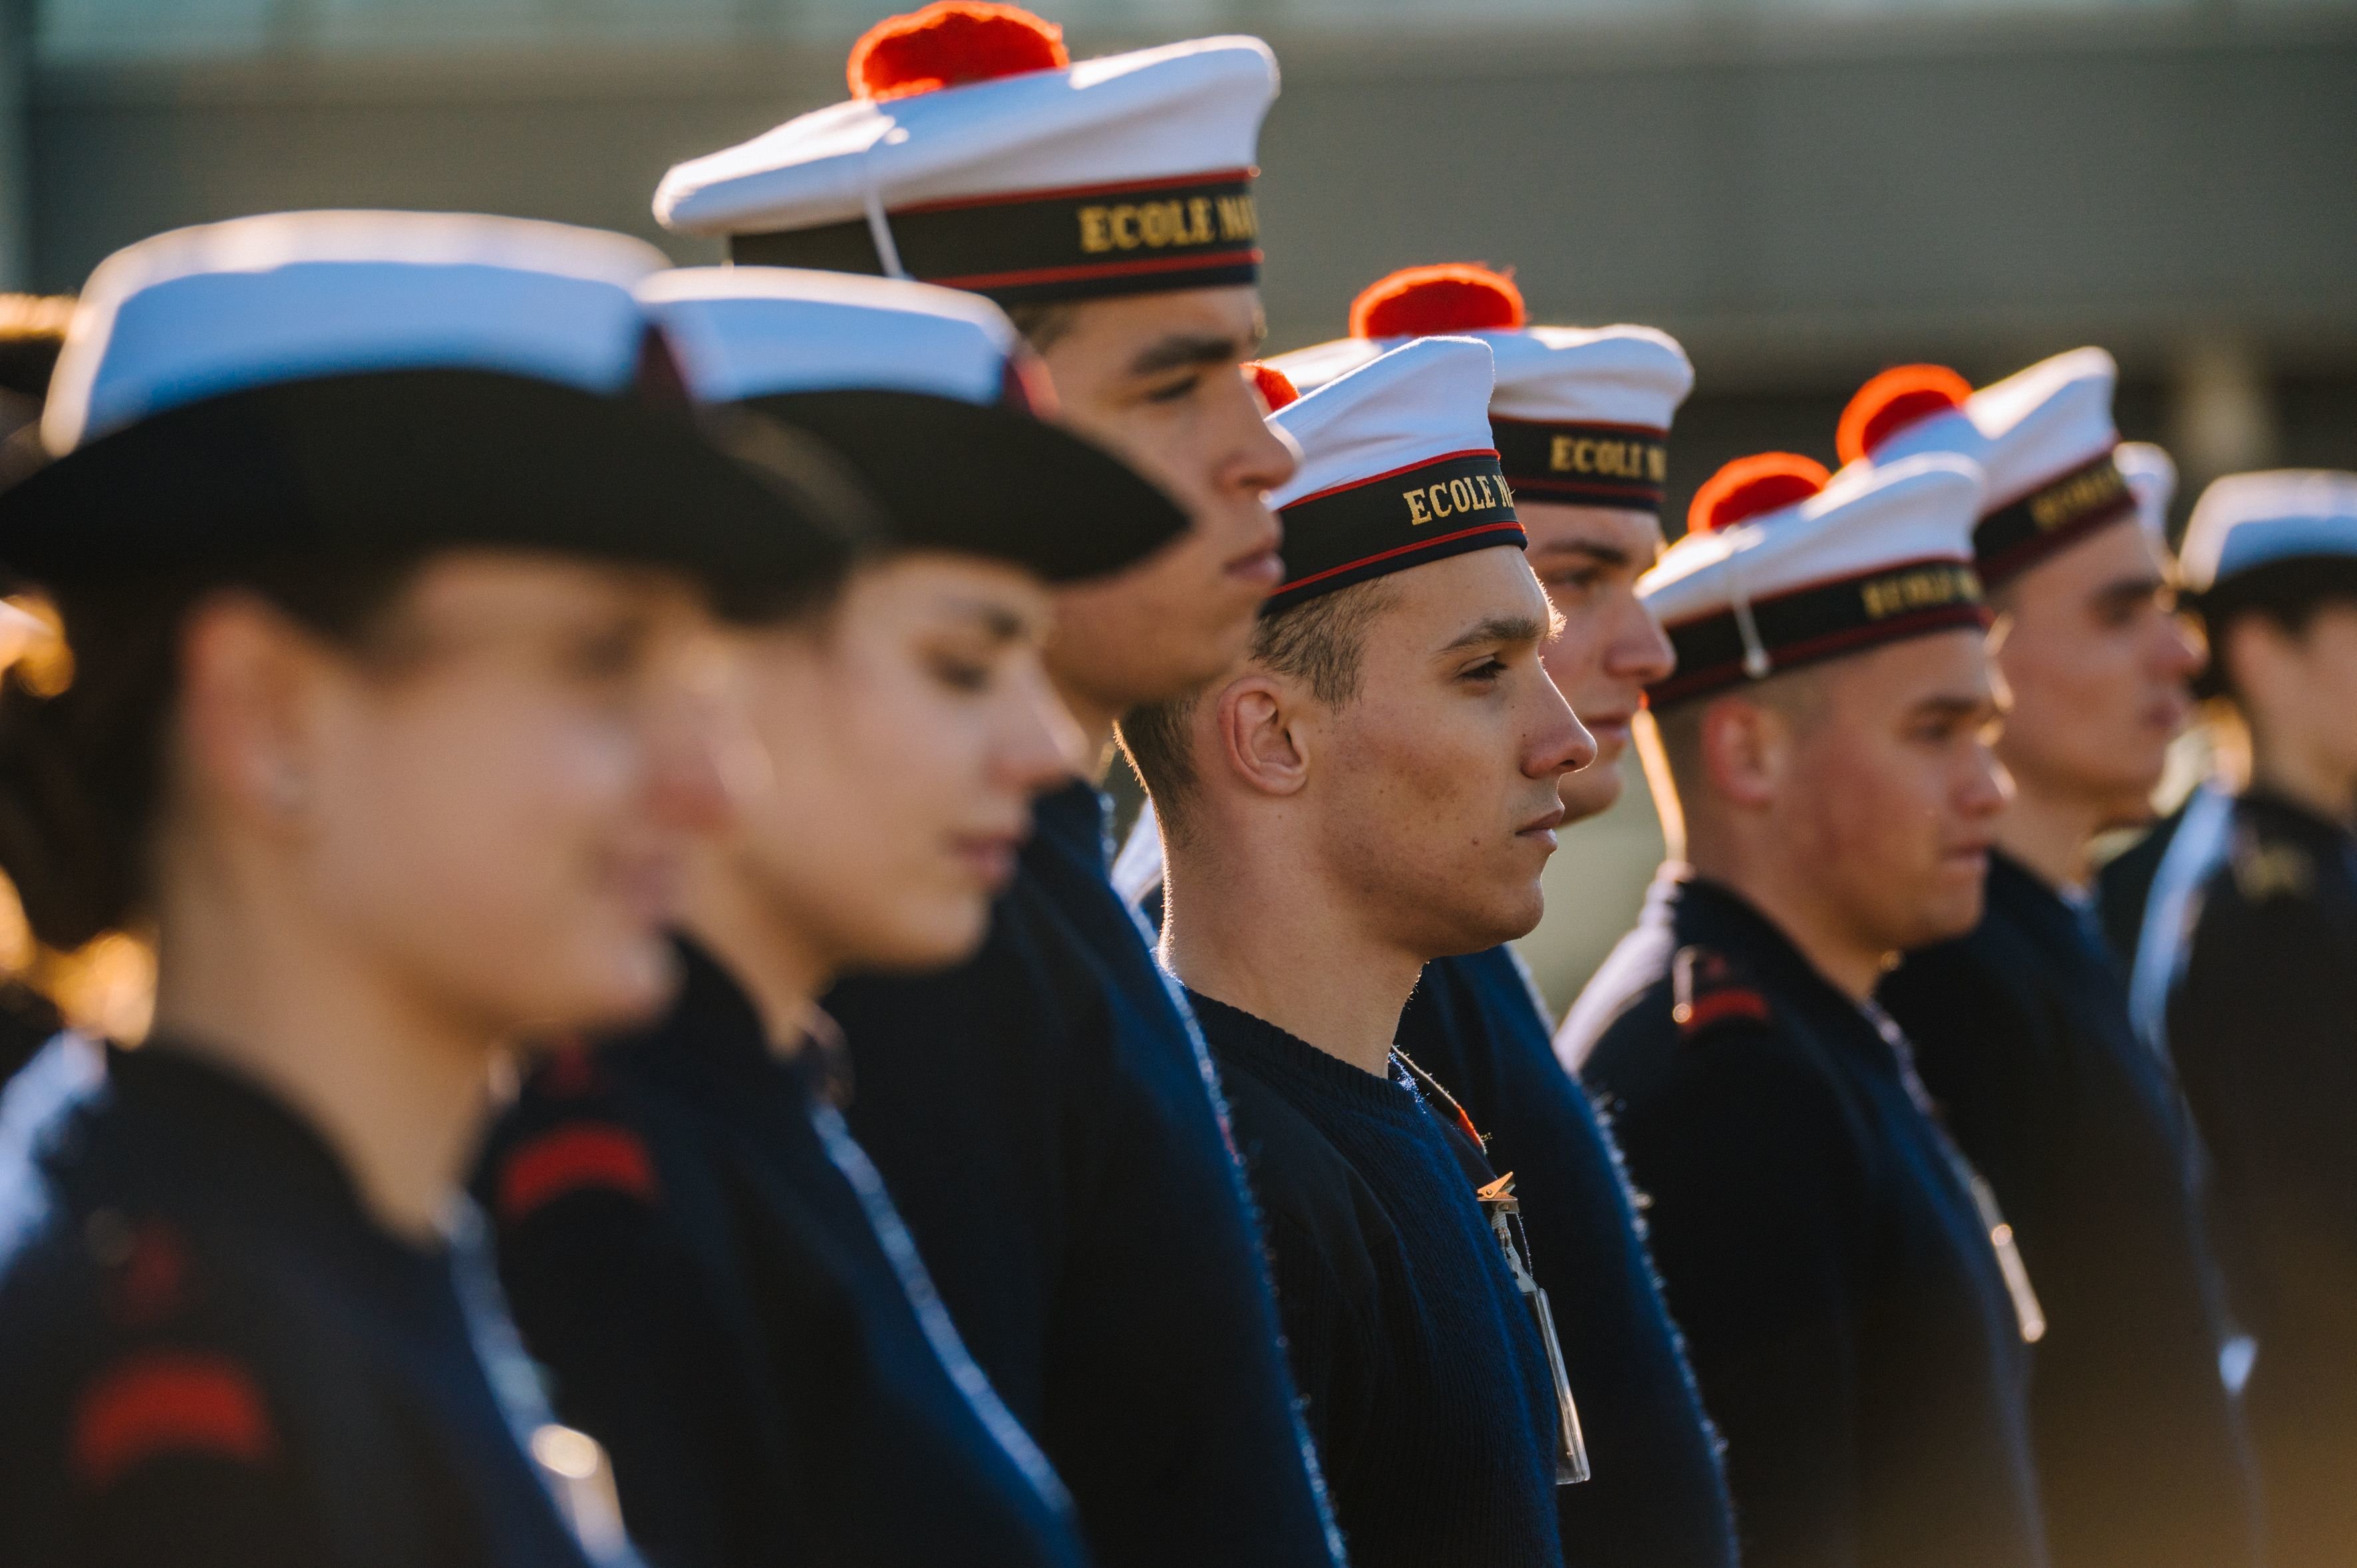 La Marine nationale recrute, que vous ayez ou non un diplôme, un peu partout dans l’Hexagone, avec des formations qui vont jusqu’à bac+5. Marine nationale/Stéphane Marc